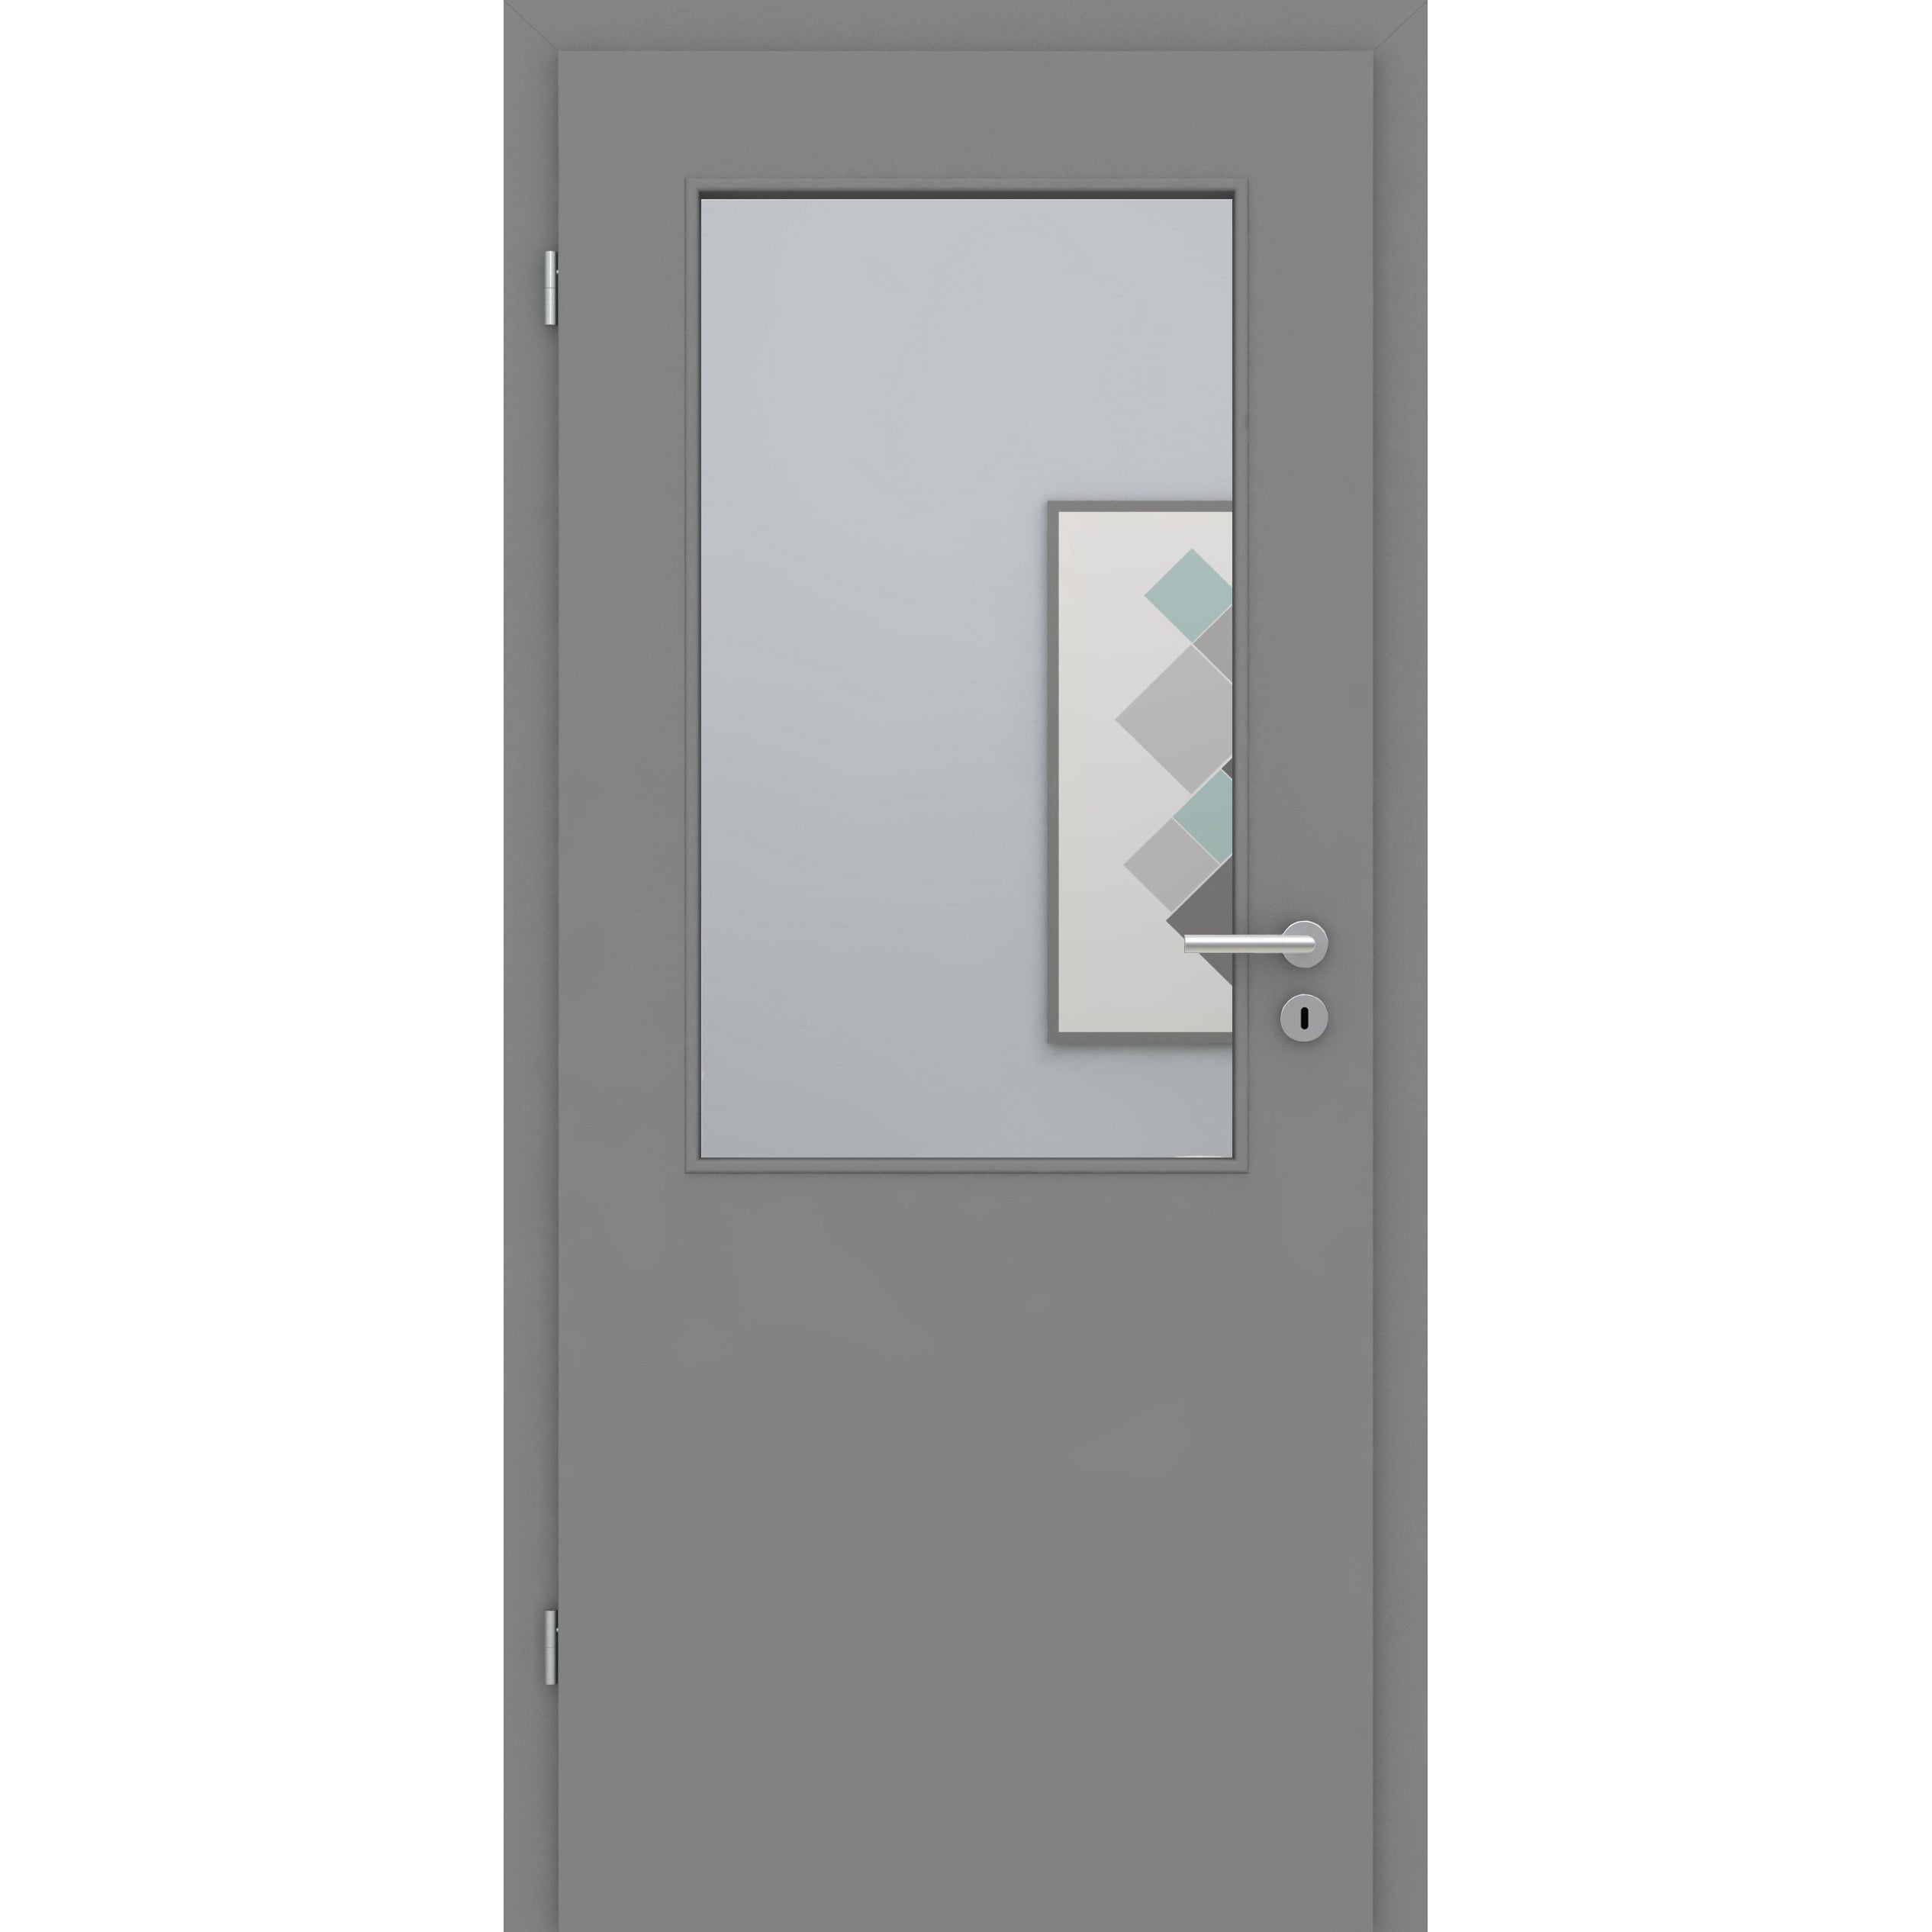 Zimmertür mit Lichtausschnitt grau glatt Designkante - Modell LAA